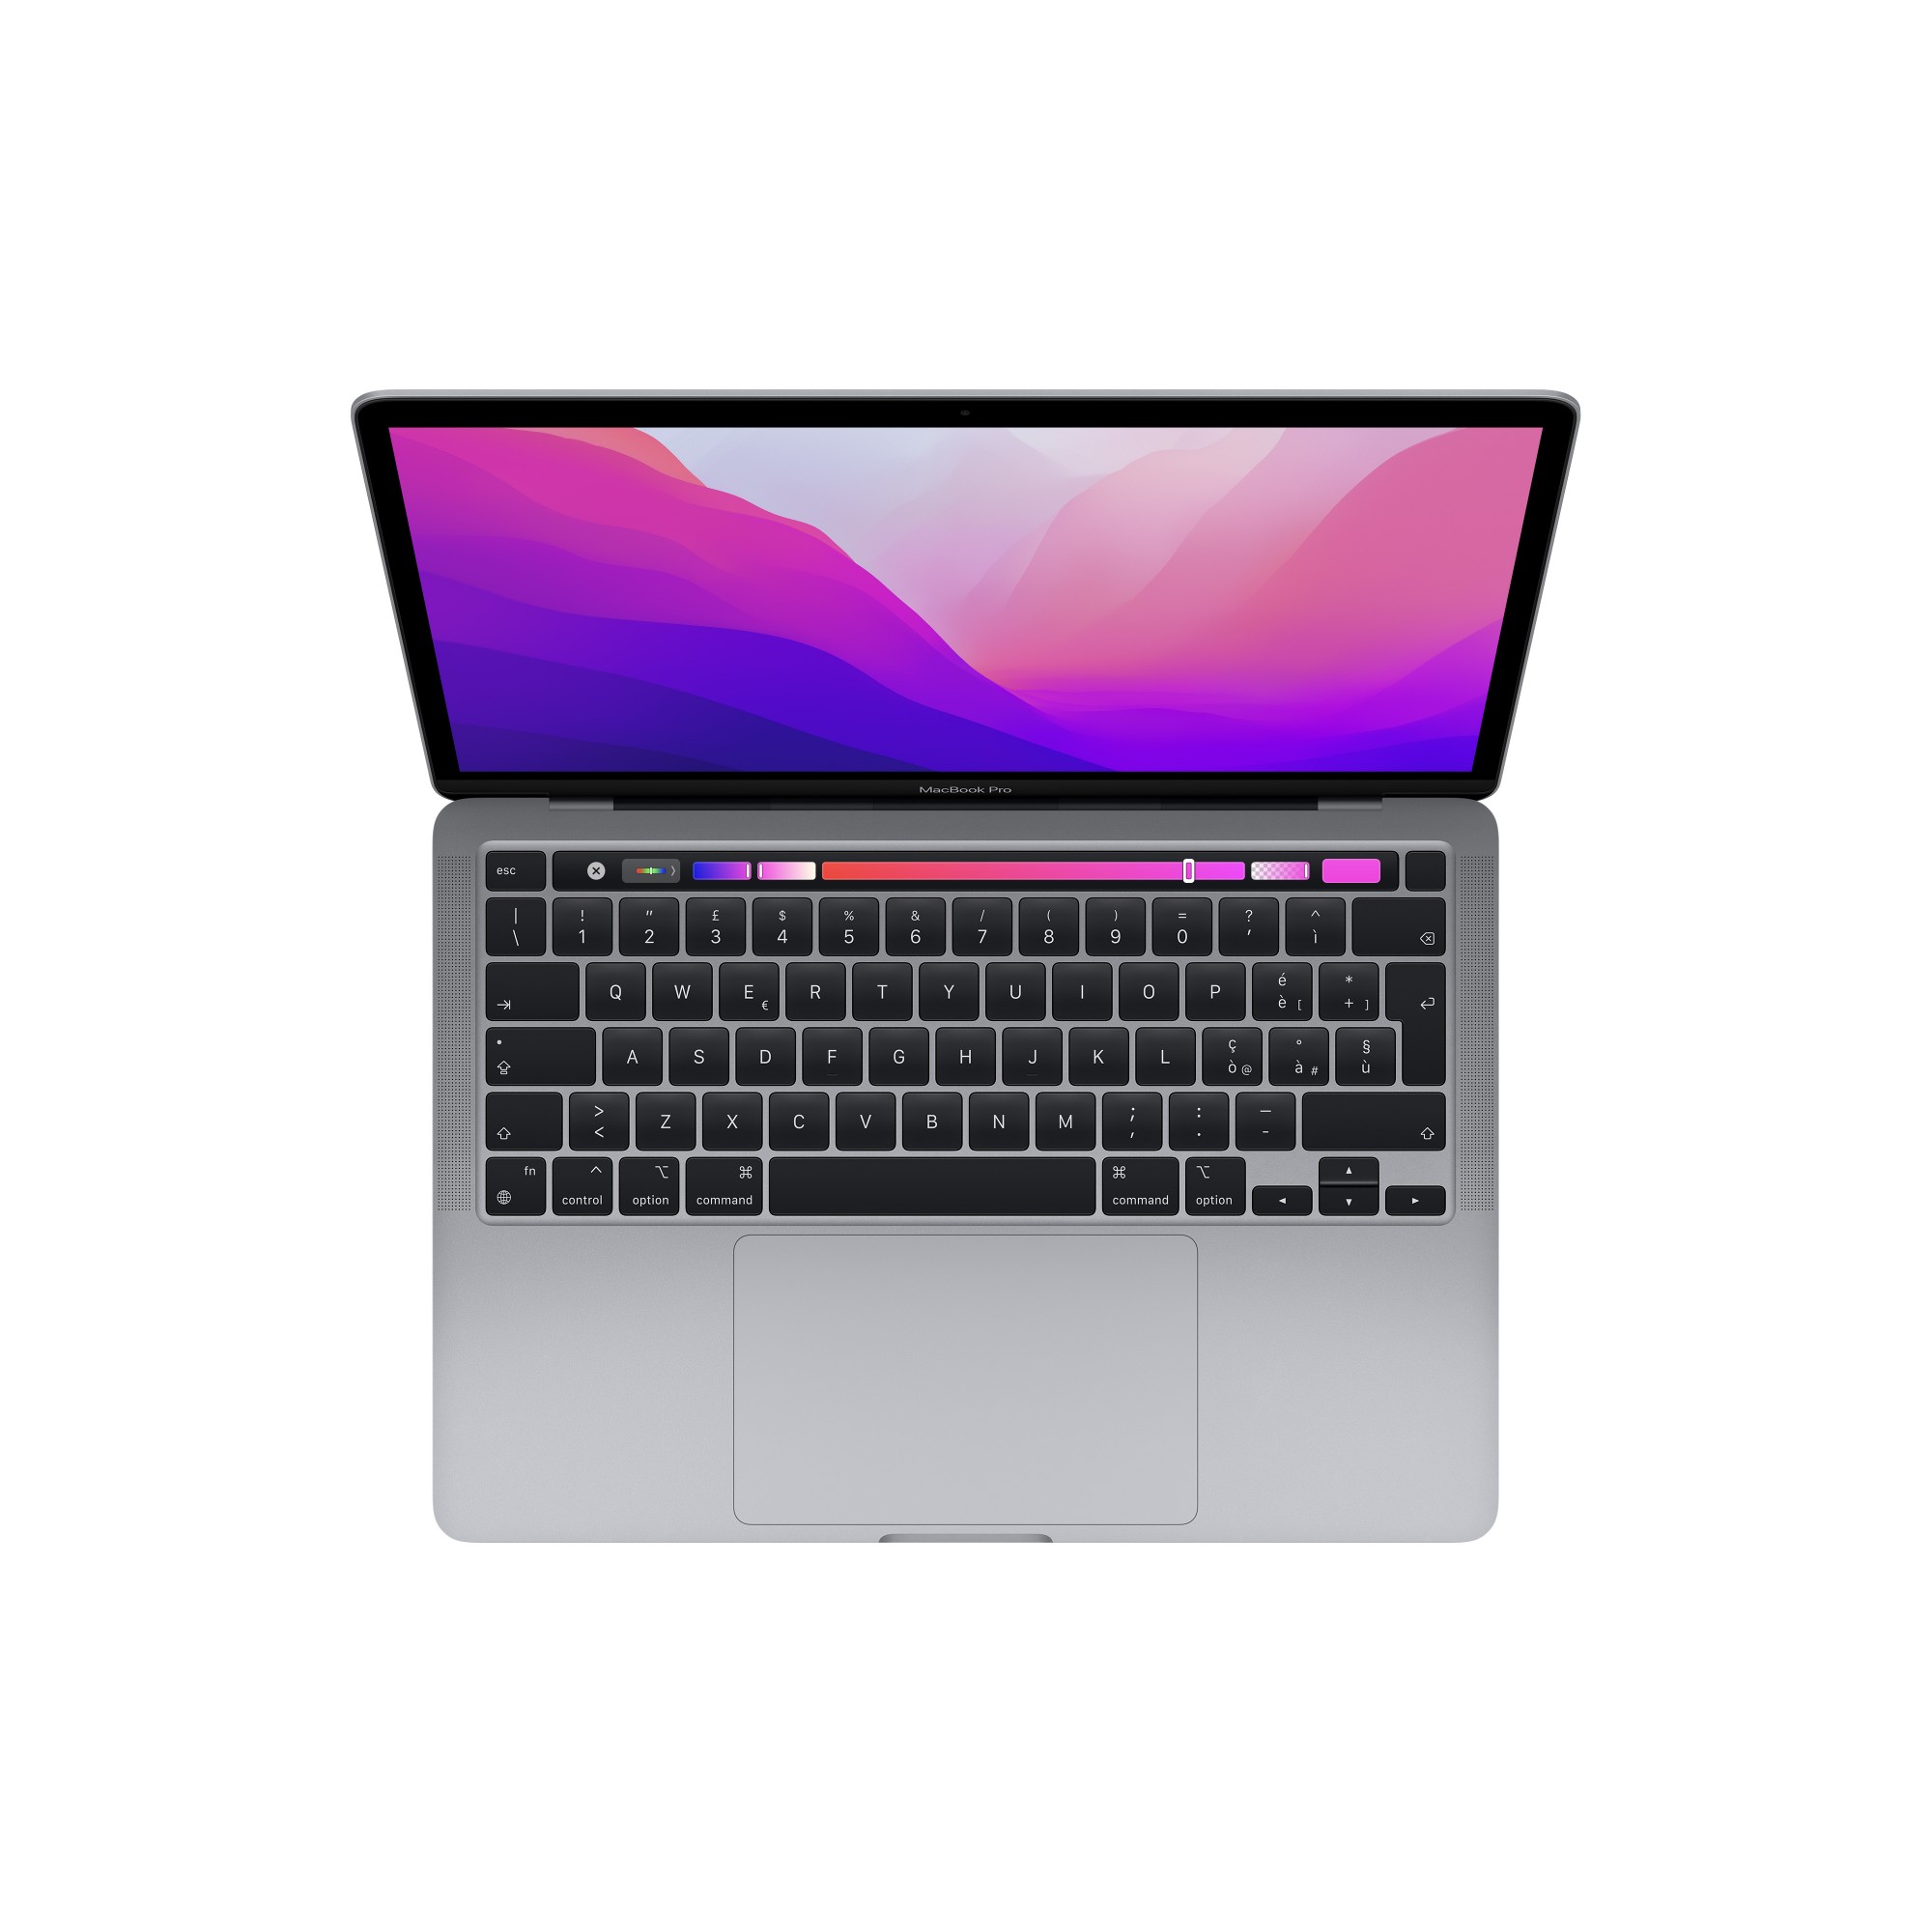 MacBook Pro, 13.3" IPS, 2560 x 1600, 500 cd/m?, 8-core Apple M2 chip, 8GB/512GB SSD, 10-core GPU, Thunderbolt/USB 4 x 2, Wi-Fi 6, Bluetooth 5.0, macOS